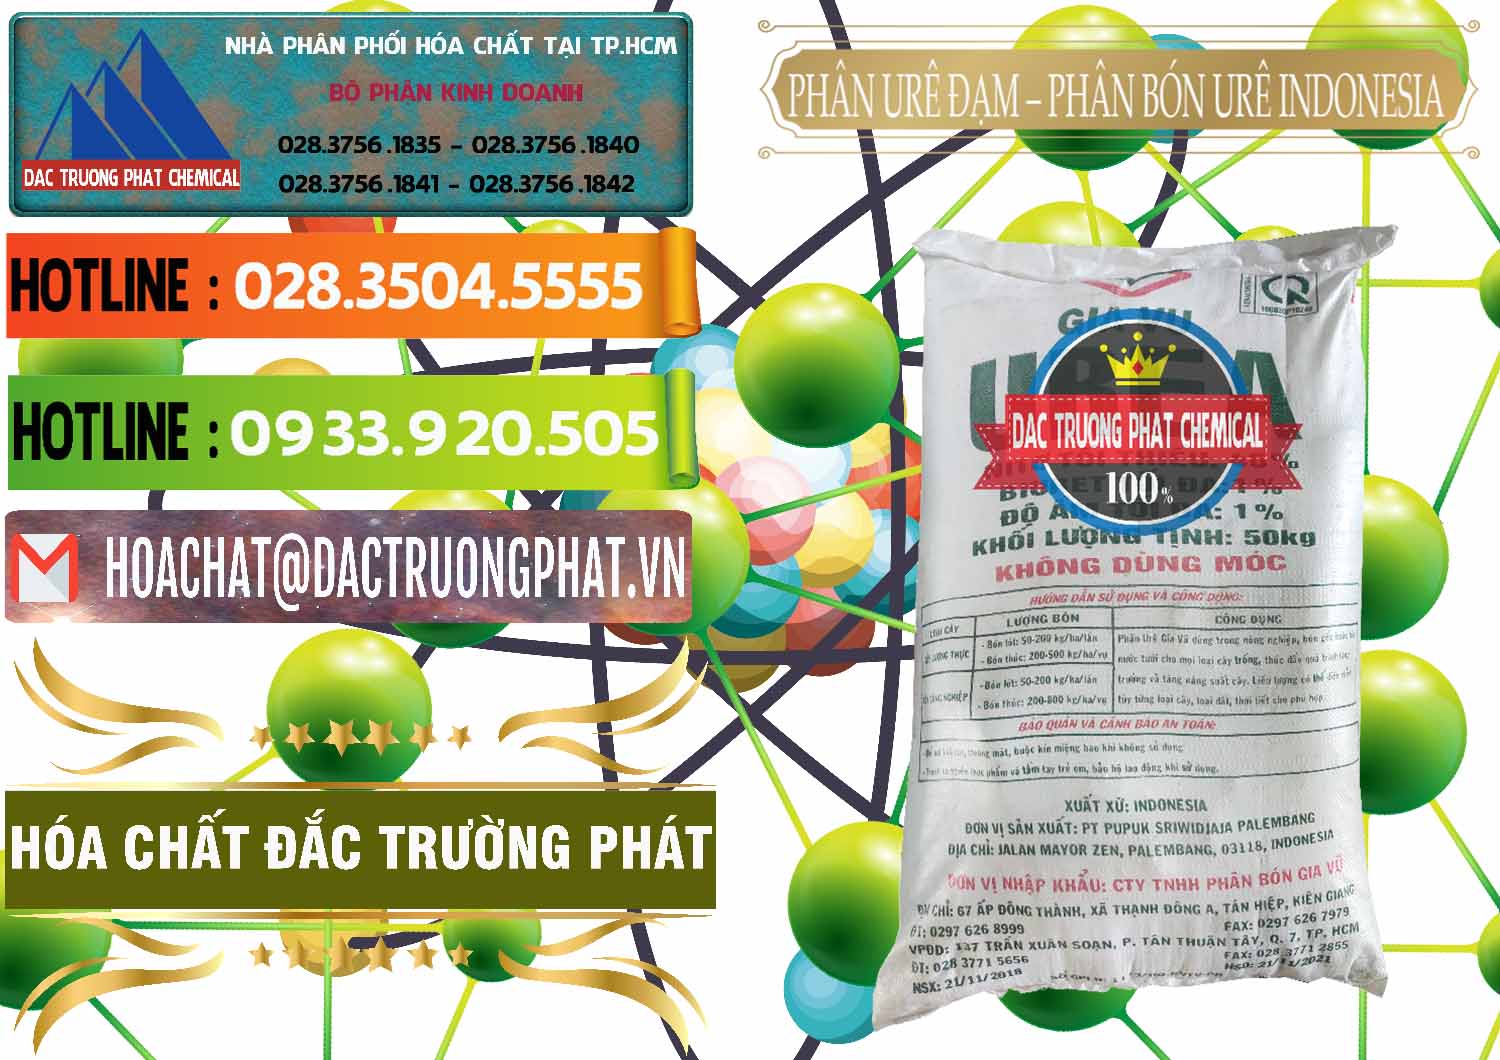 Công ty nhập khẩu & bán Phân Urê Đạm – Phân Bón Urê Indonesia - 0194 - Công ty chuyên kinh doanh ( cung cấp ) hóa chất tại TP.HCM - cungcaphoachat.com.vn